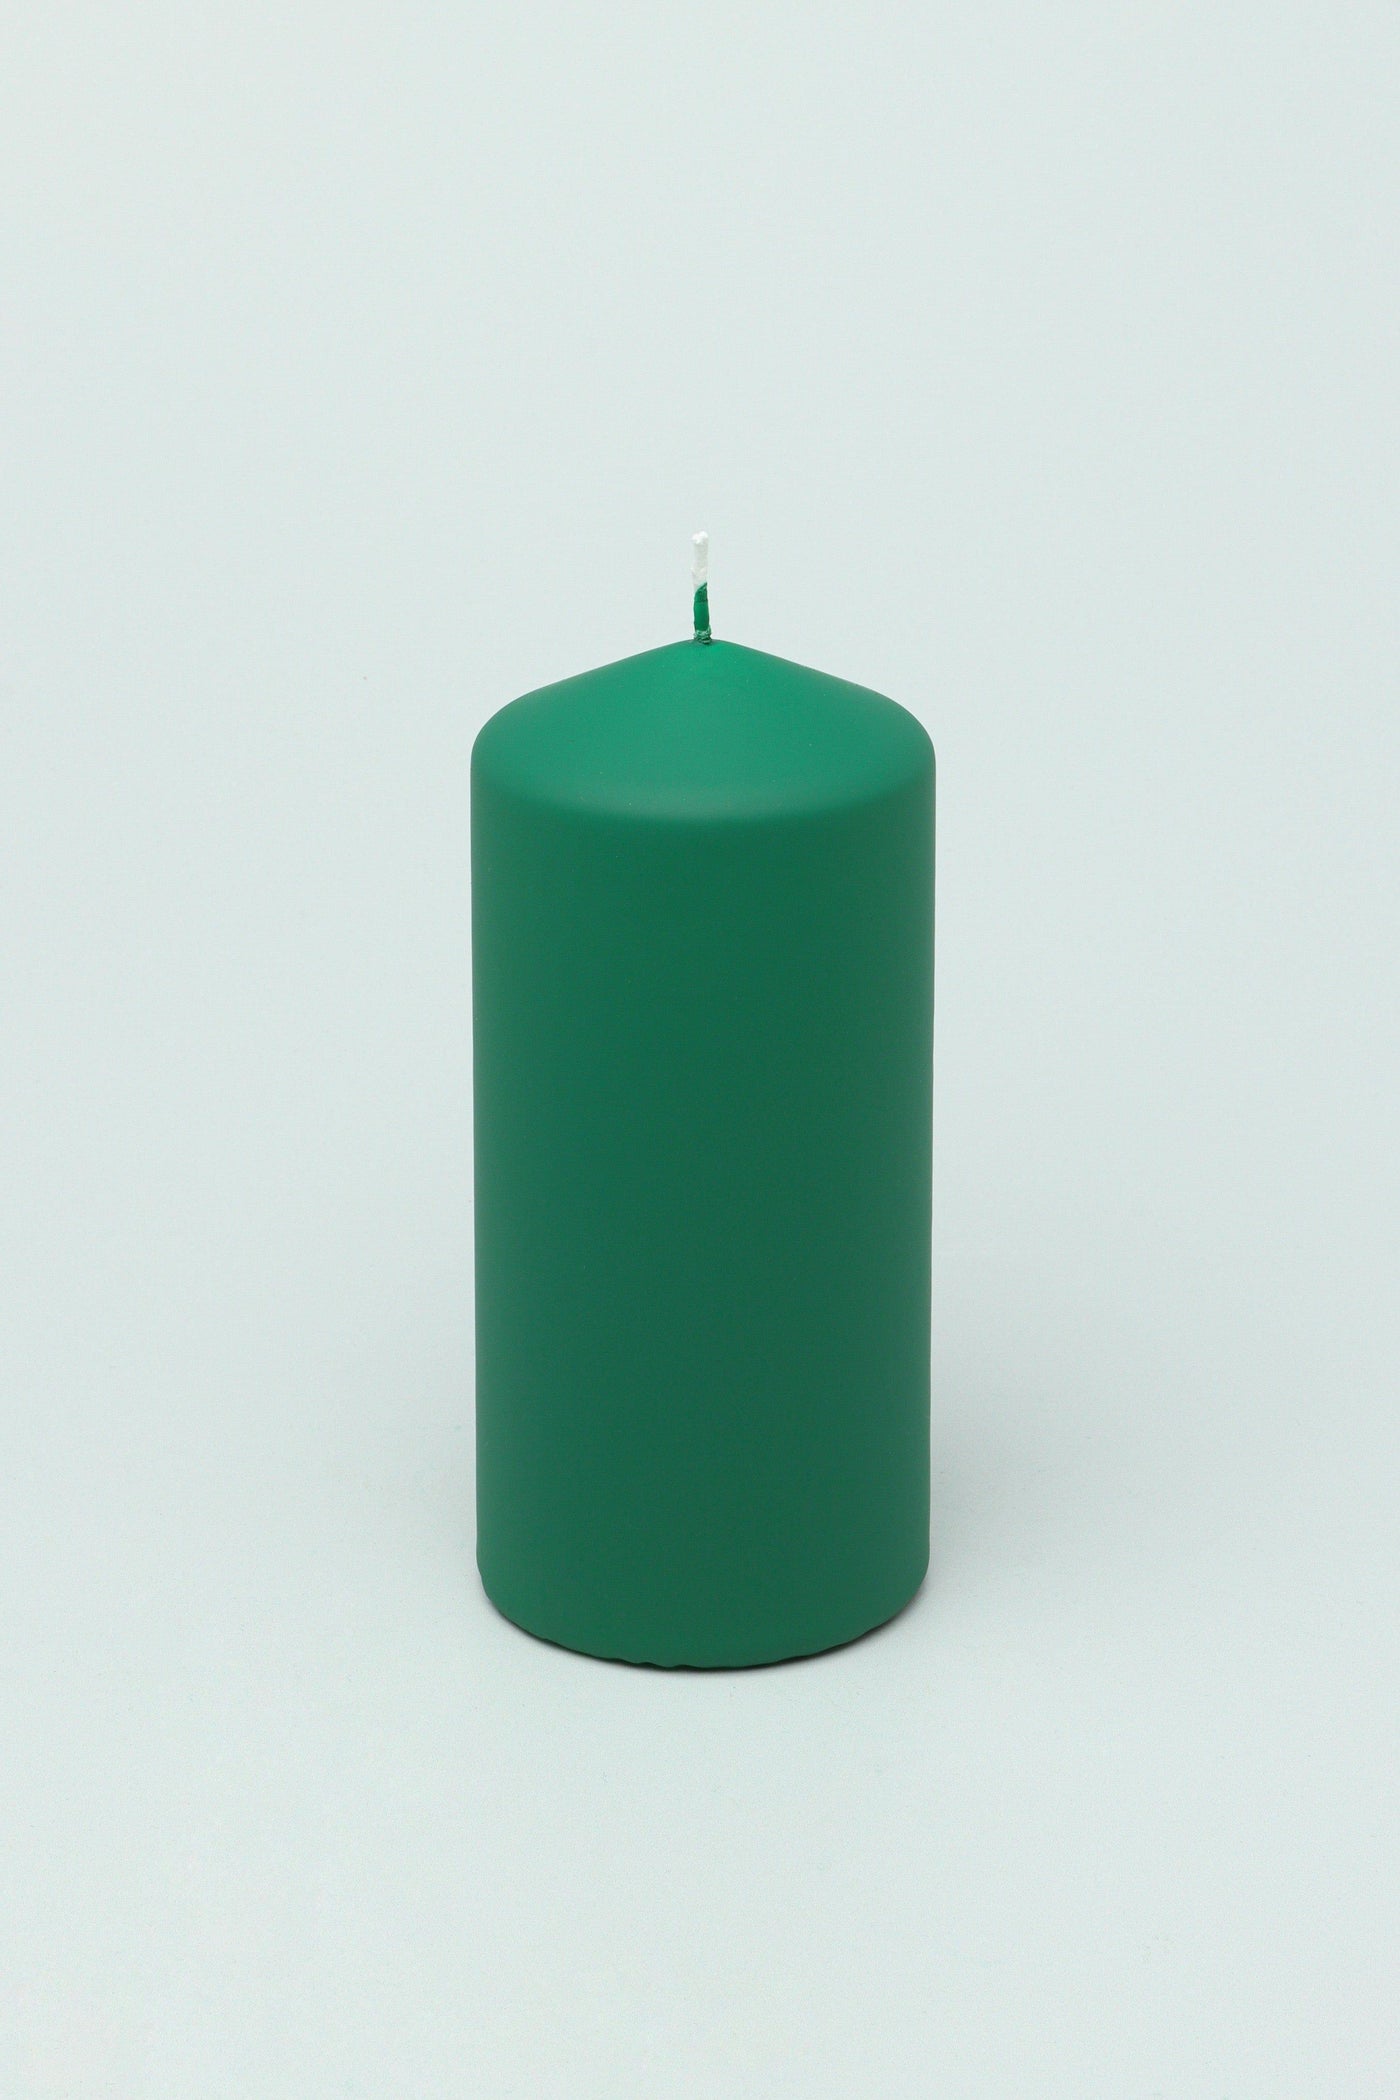 G Decor Candles Green / Large pillar Henry Velvet Matt Emerald Green Pillar Candles